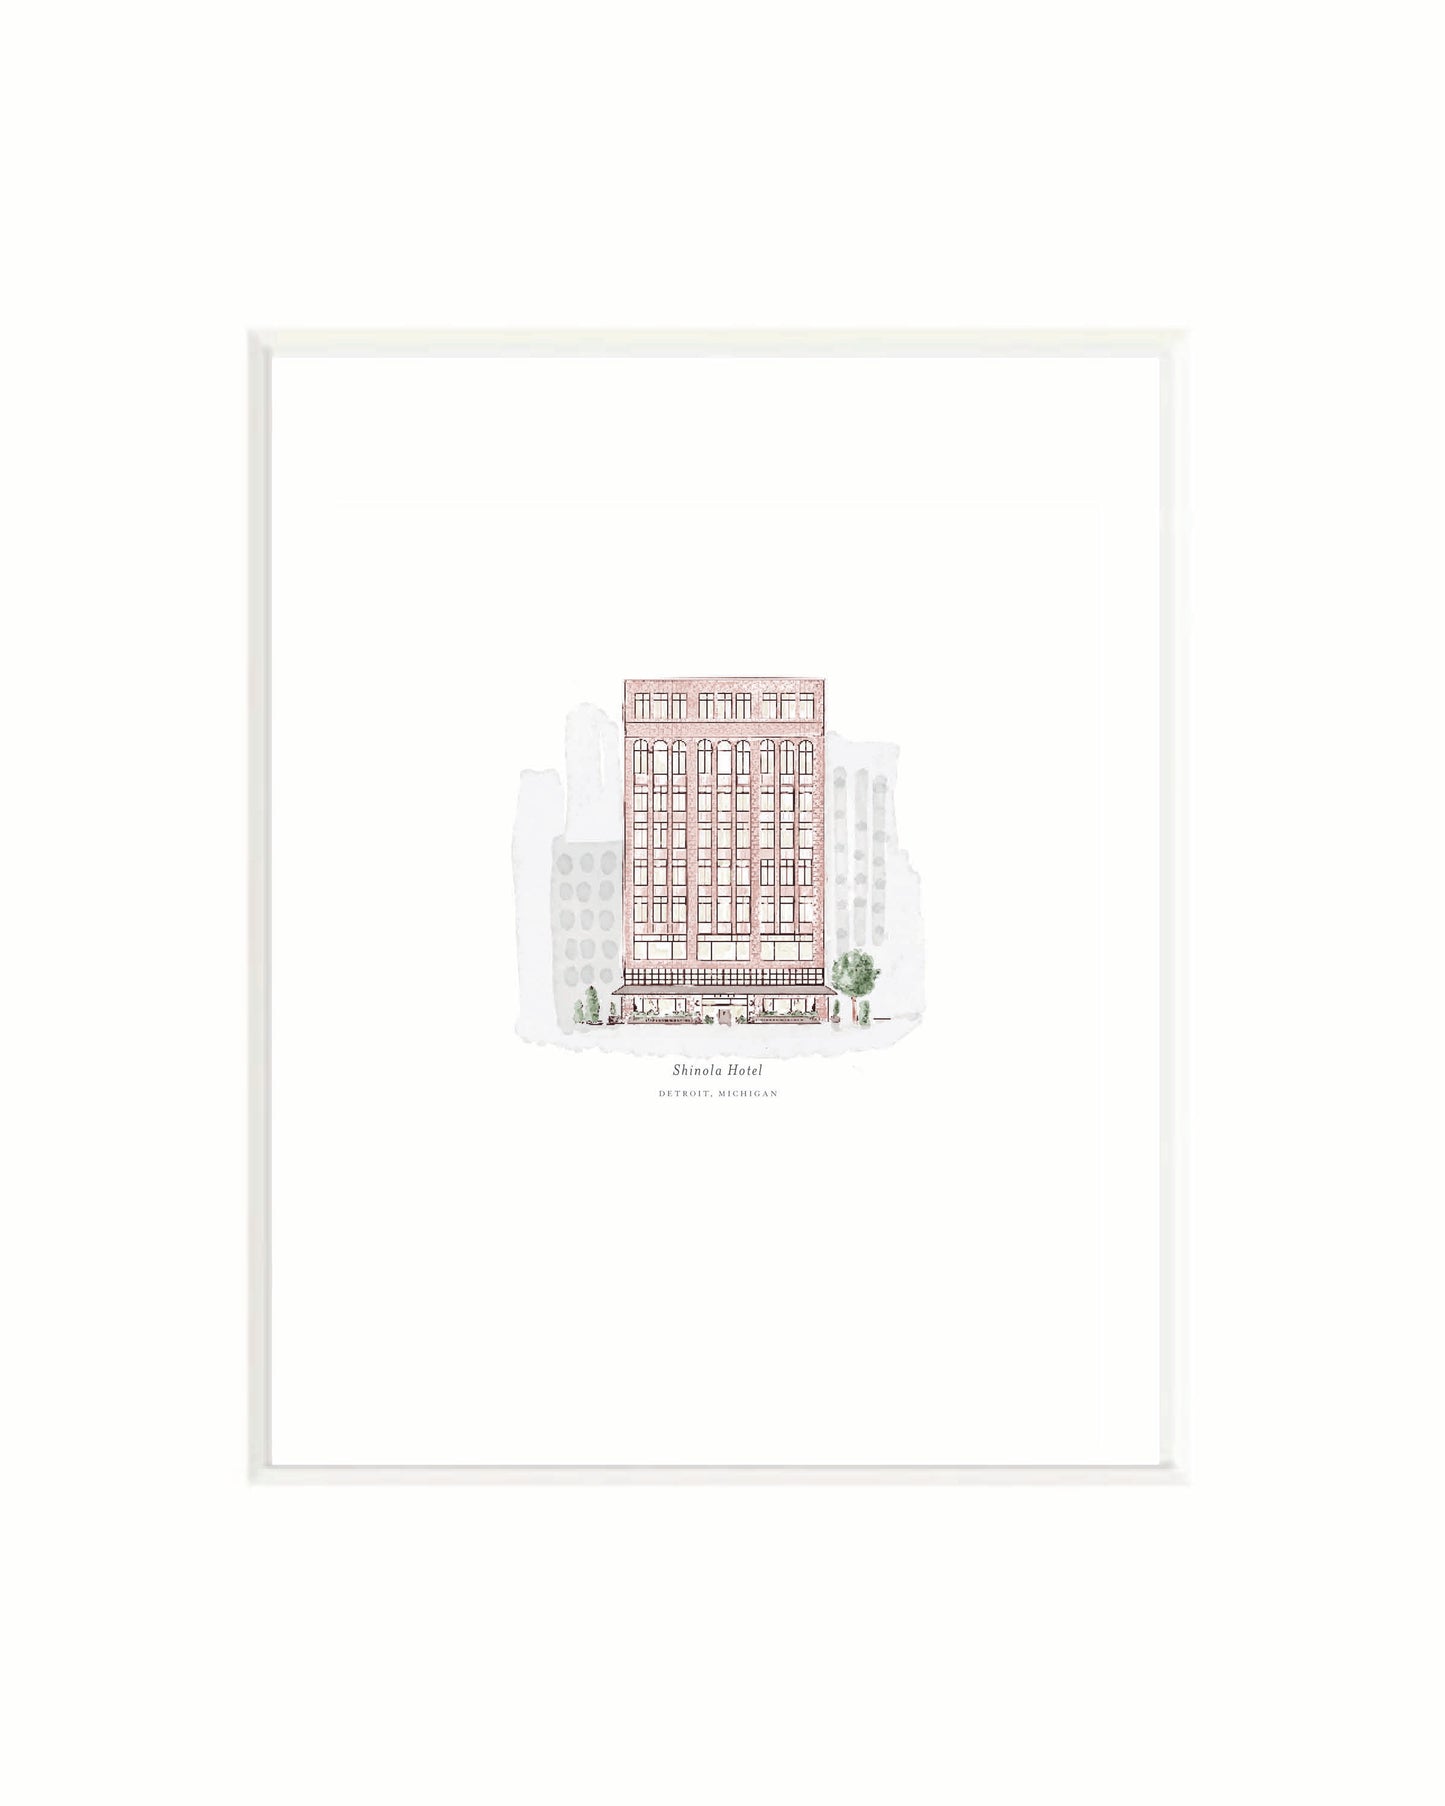 Shinola Hotel Print